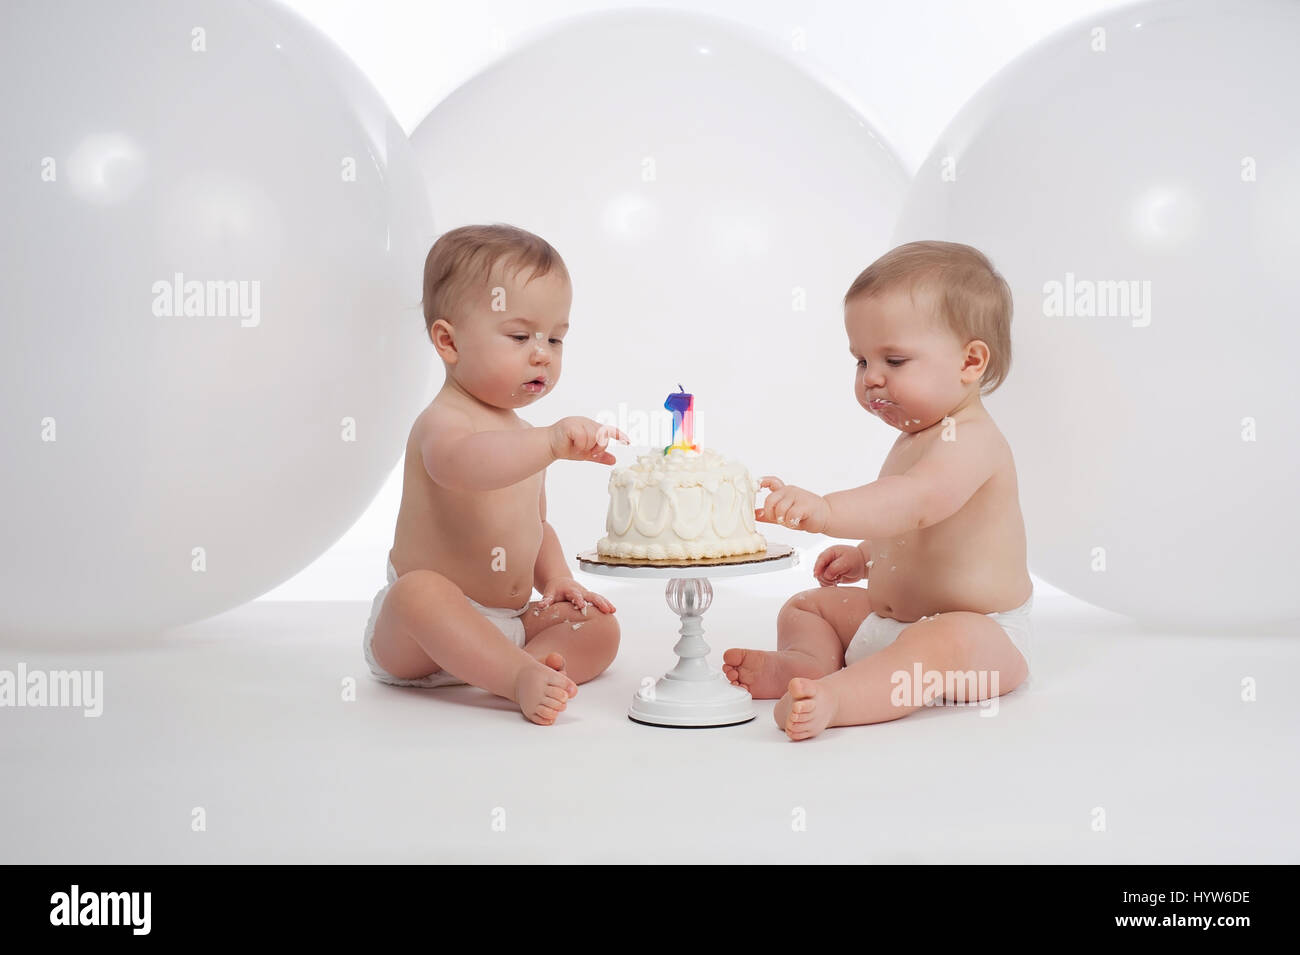 Ein Jahr alt Zwillingsbrüder tragen von Windeln und essen ihre Geburtstagstorte. Gedreht im Studio mit großen, weißen Luftballons in den Hintergrund. Stockfoto